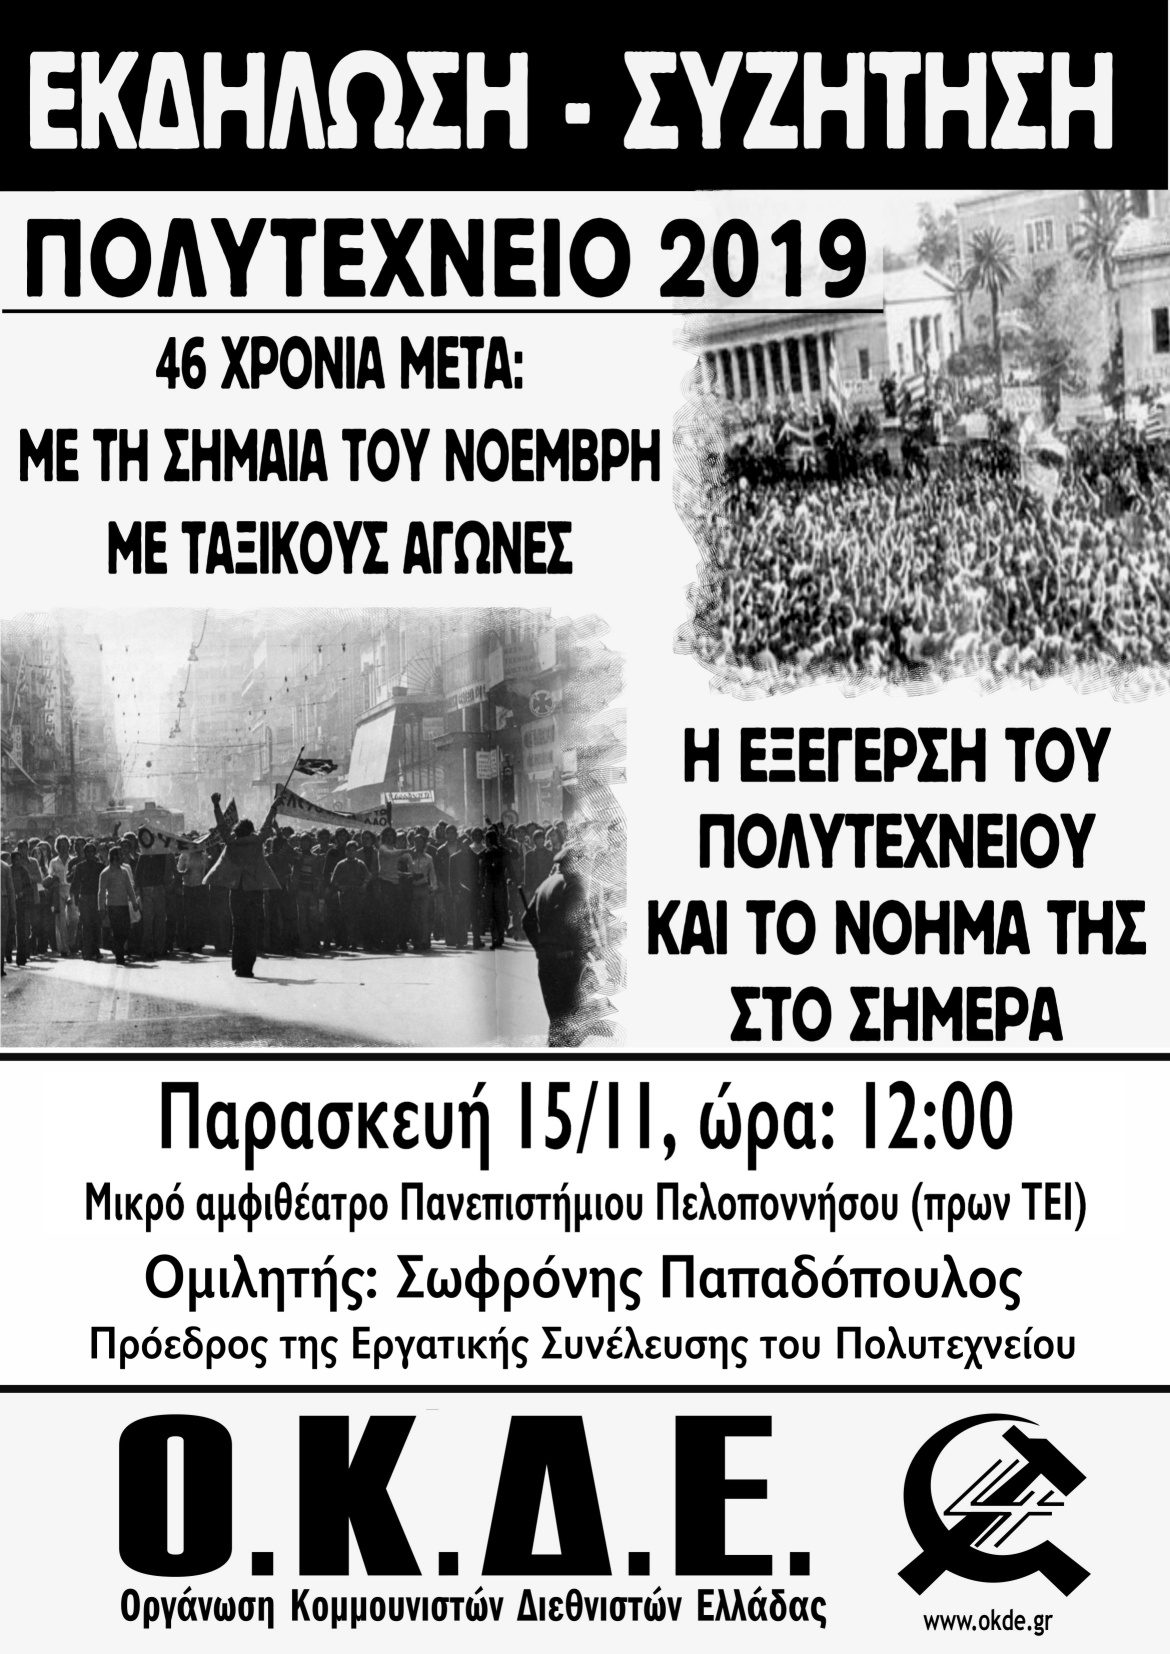 Πάτρα: Εκδήλωση-συζήτηση της ΟΚΔΕ για την εξέγερση του Πολυτεχνείου, Παρασκευή 15/11